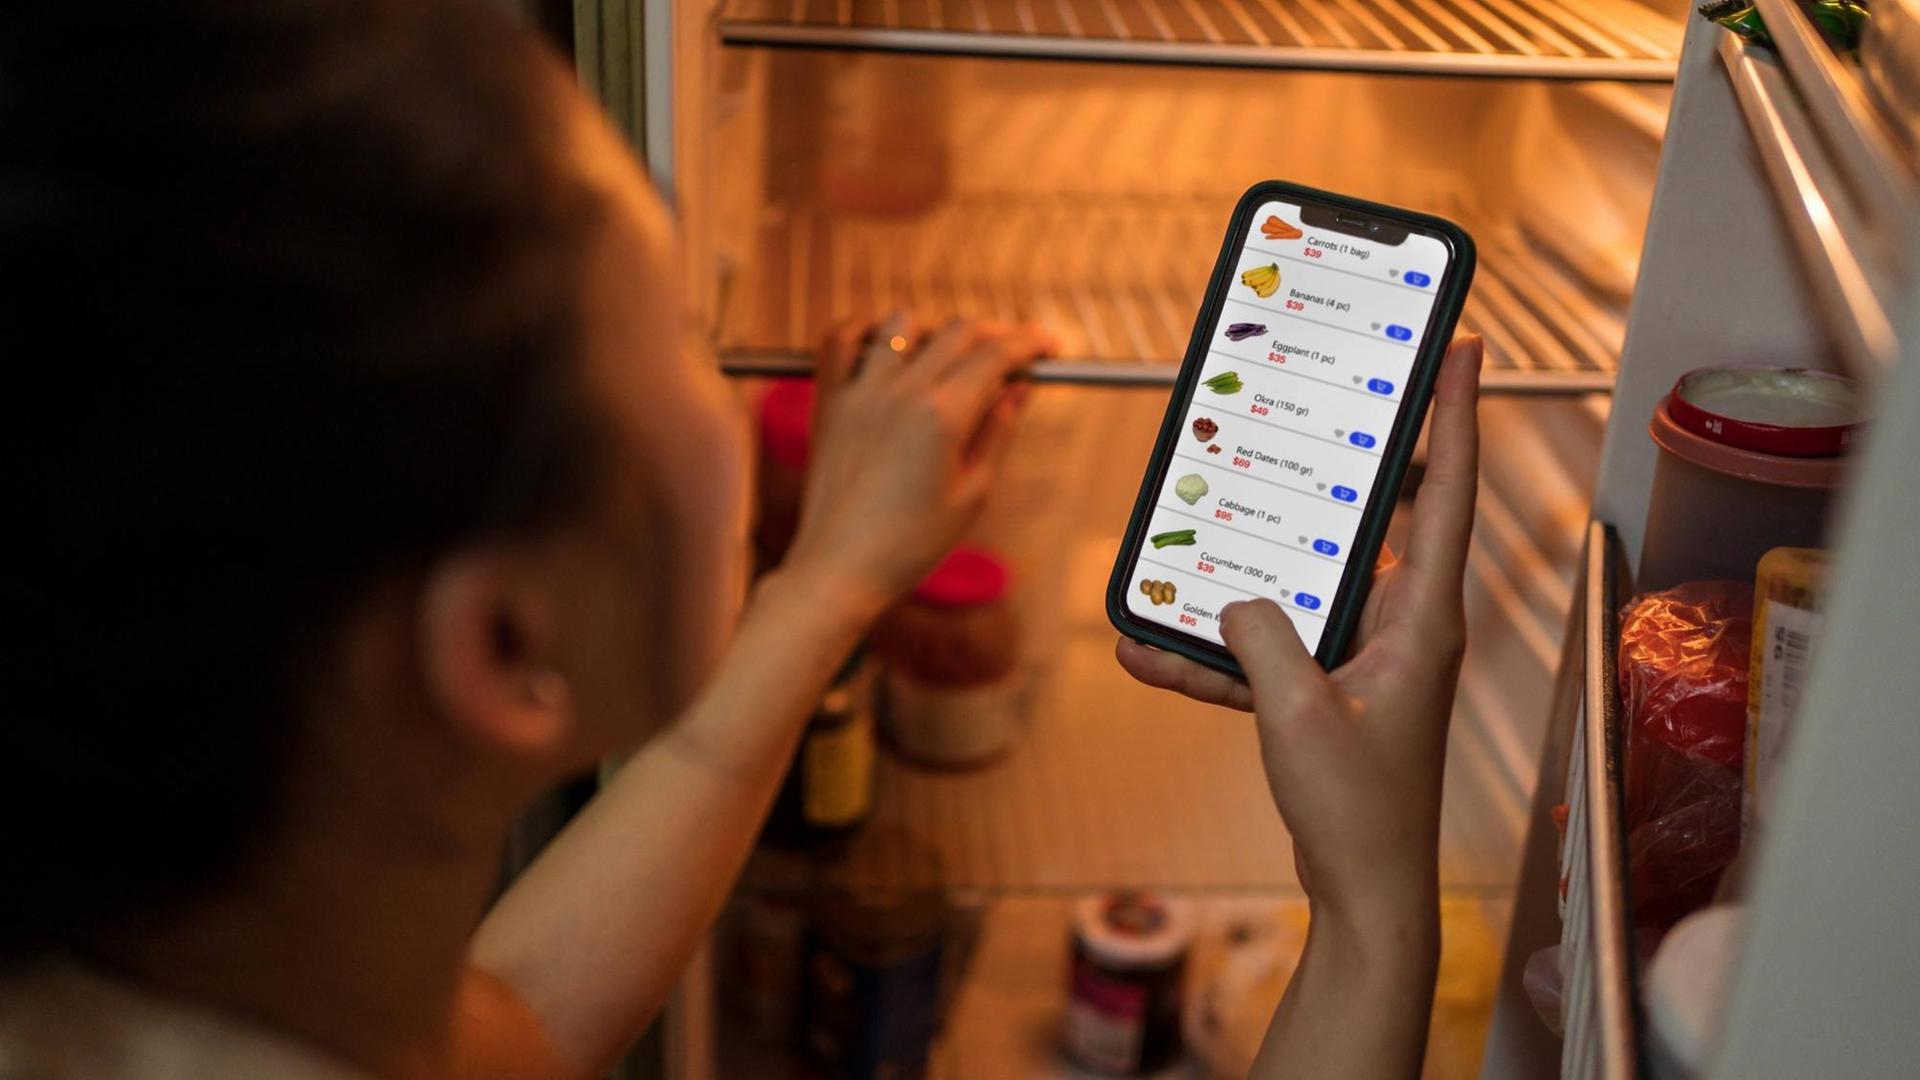 Eine Frau steht vor einem offenen Kühlschrank und bestellt Lebensmittel per App.